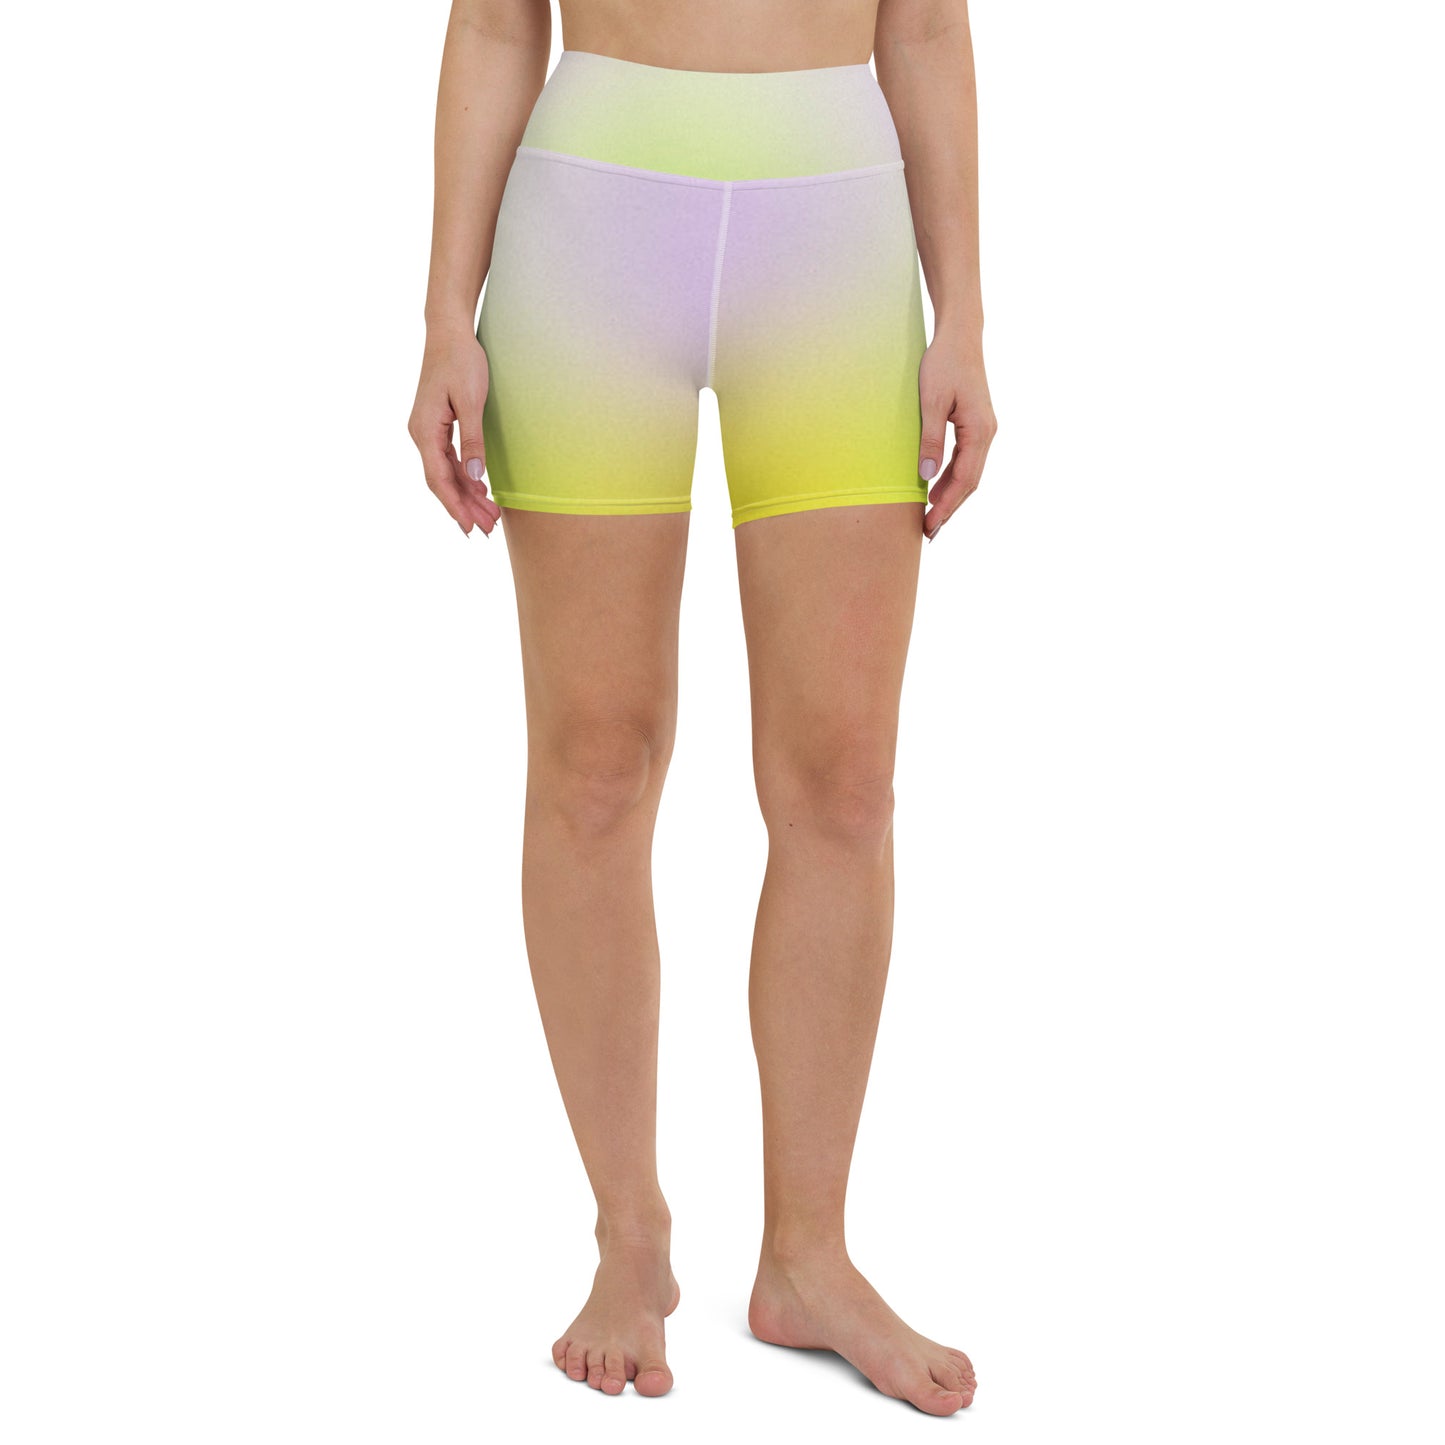 Women’s active shorts, women’s high waist shorts, women’s workout shorts, women’s yoga shorts